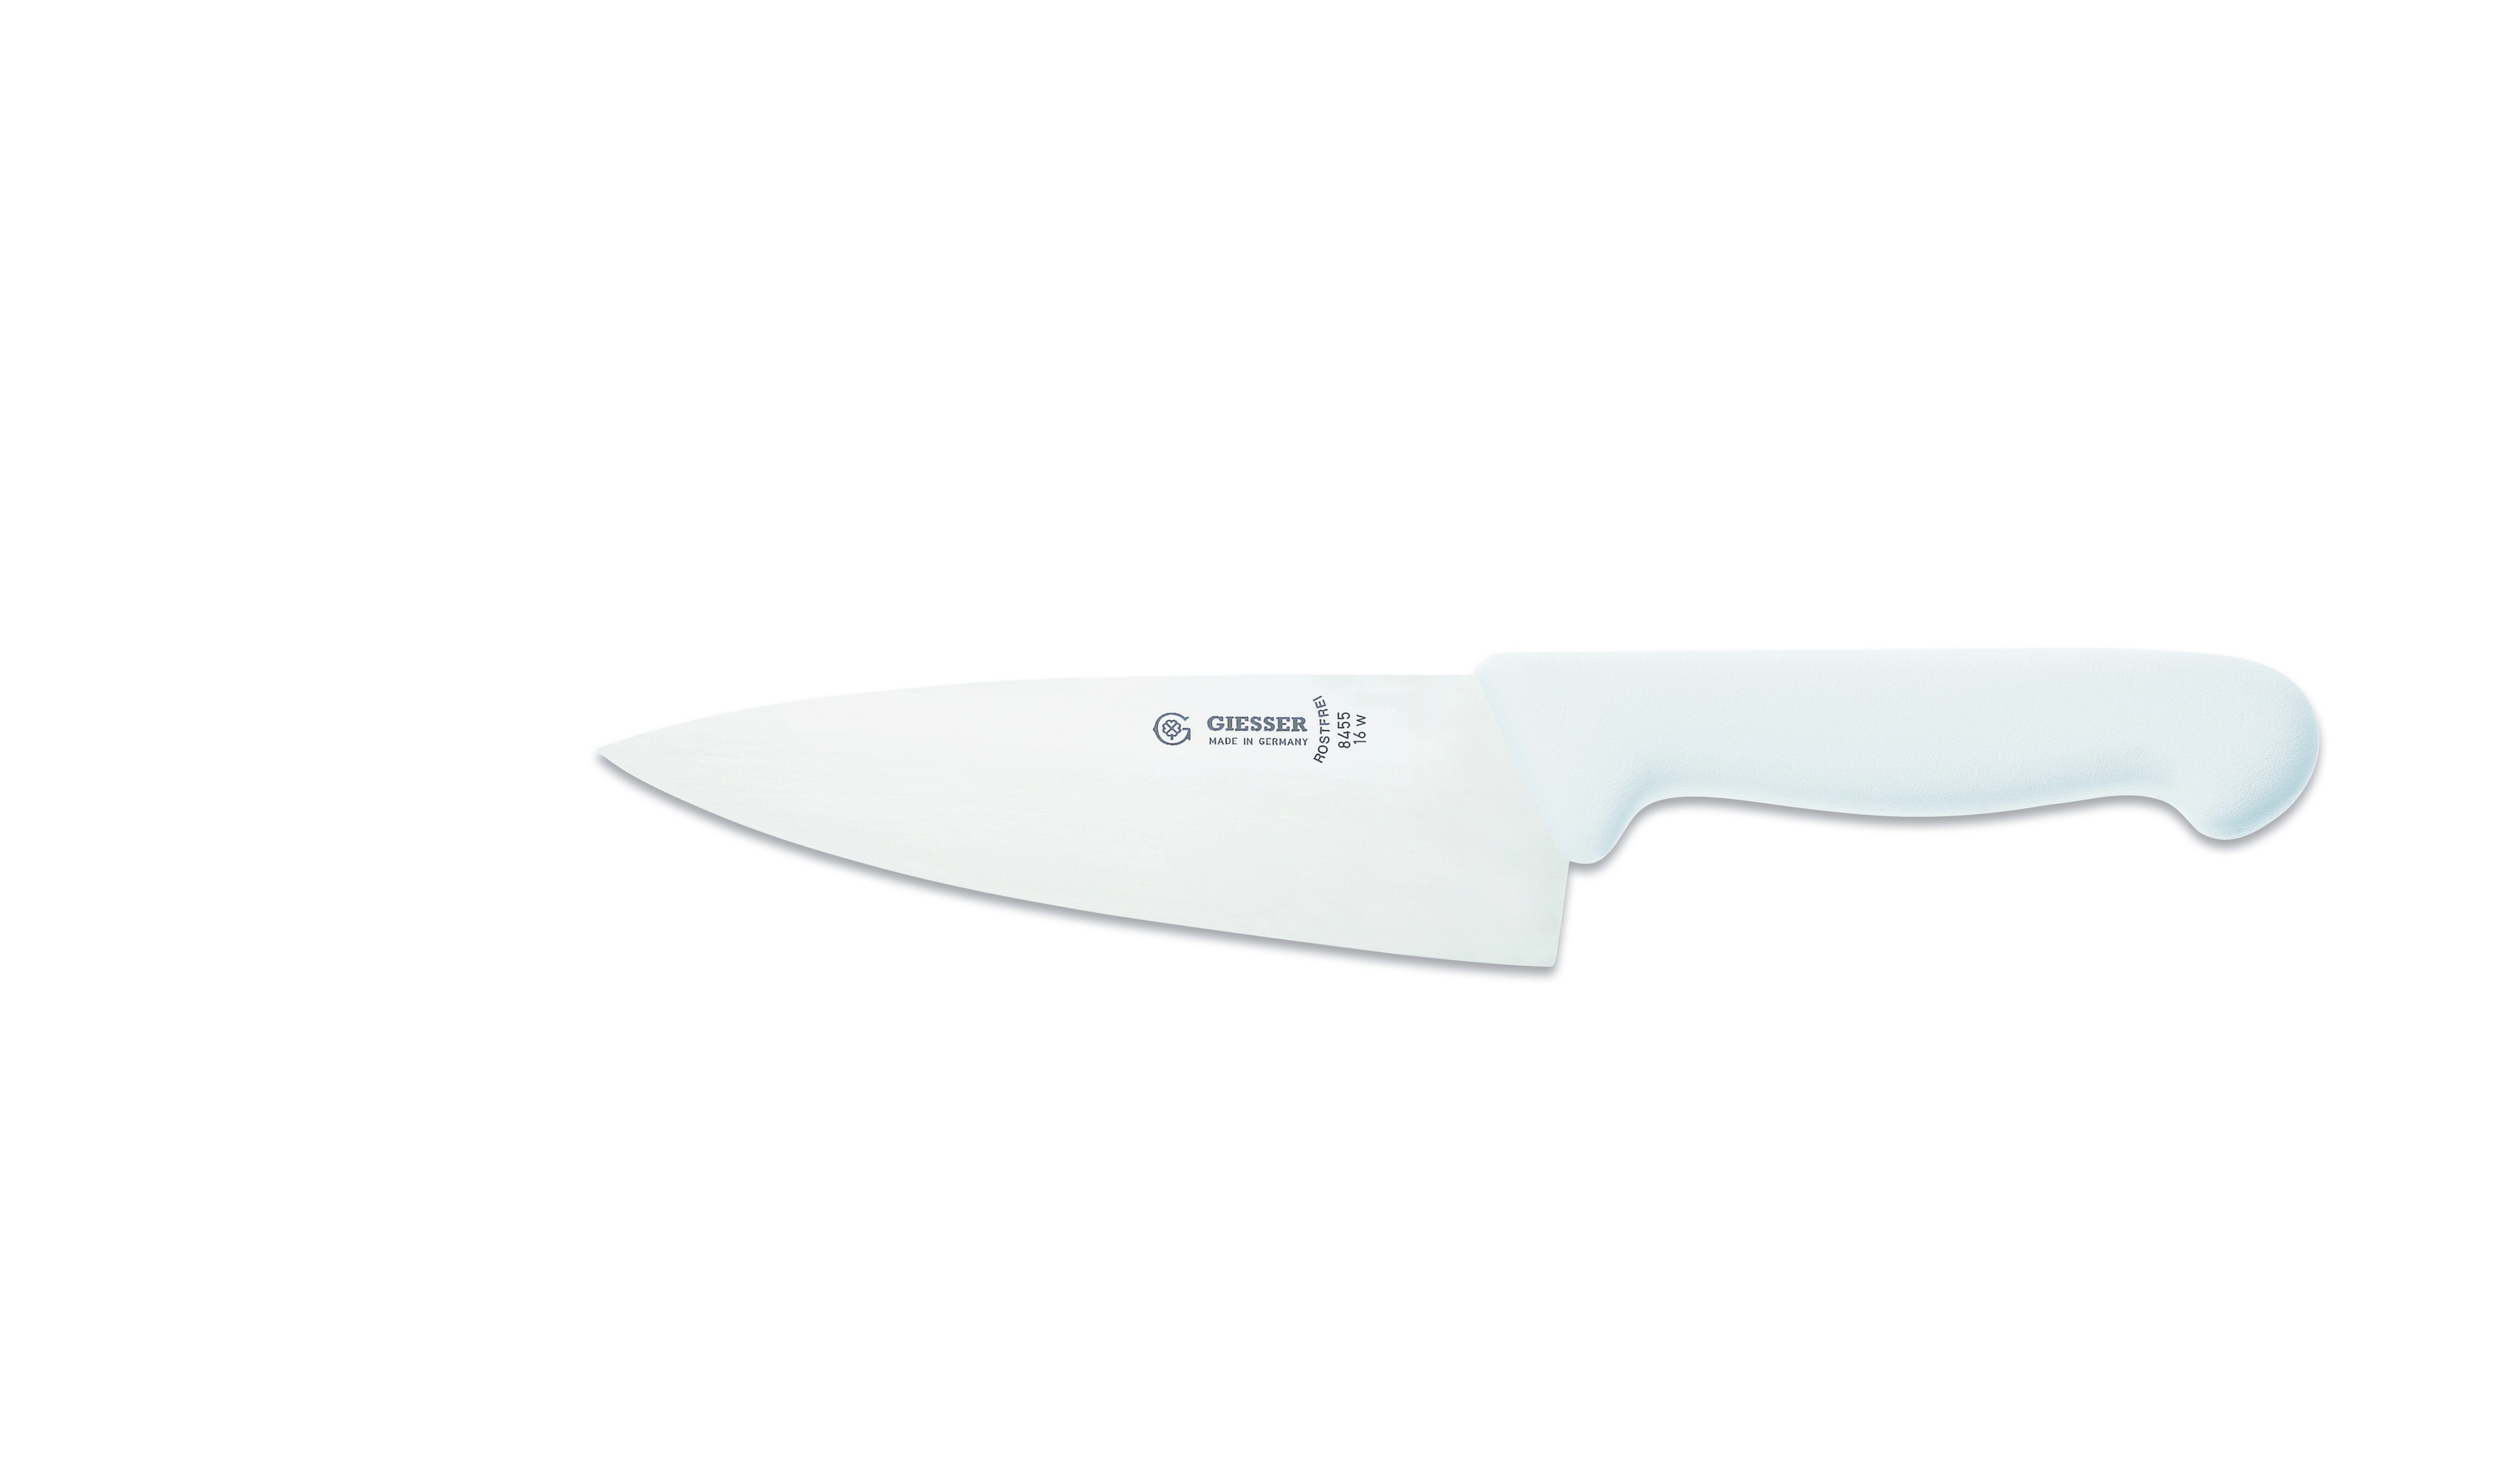 Küche scharf, Messer breite Handabzug, jede breit Form, weiß Rostfrei, Ideal Giesser 8455, Küchenmesser für Kochmesser